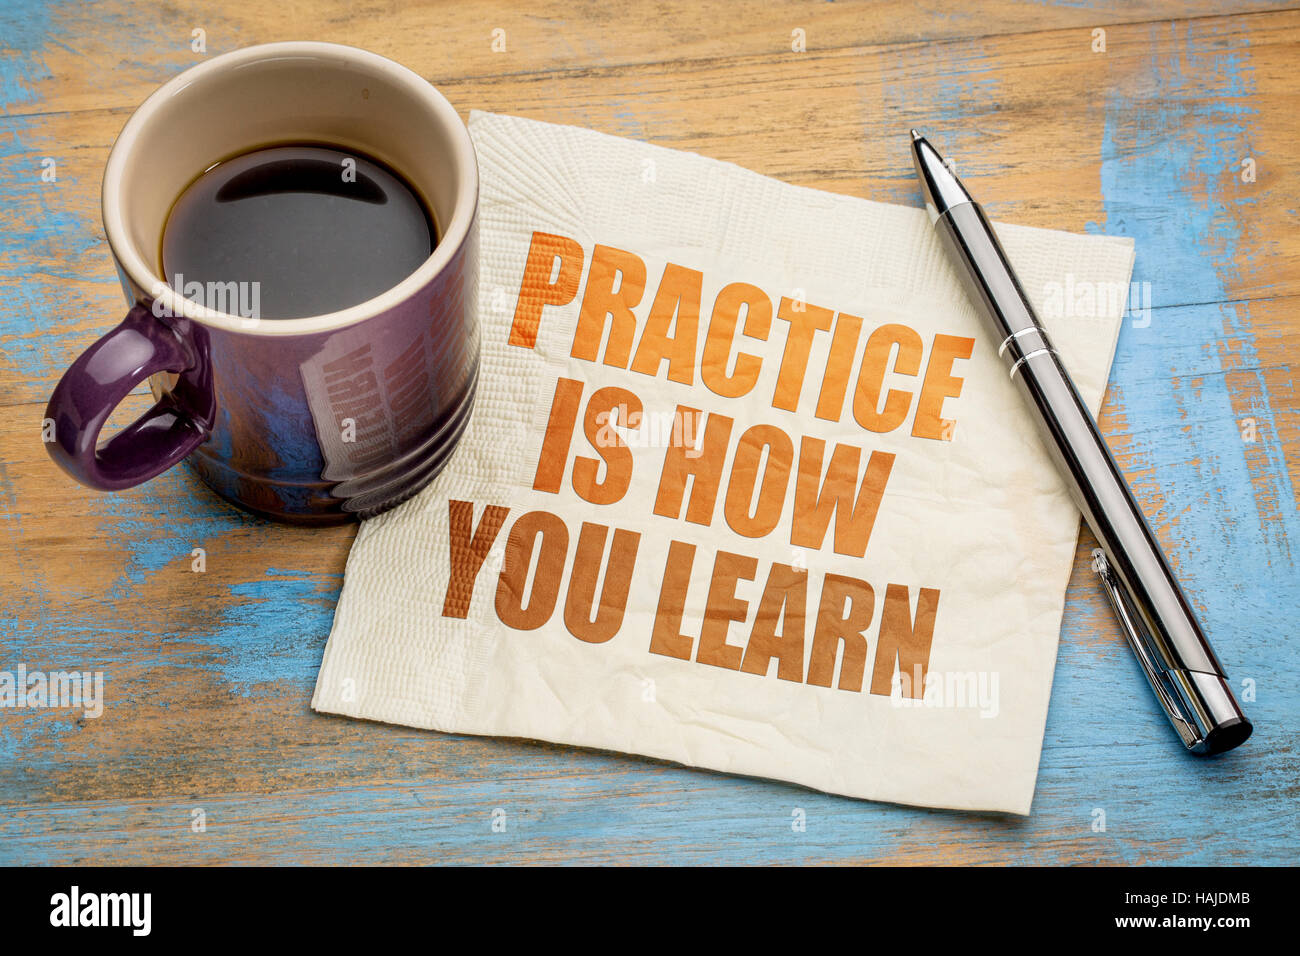 La pratica è il modo in cui il vostro apprendimento - il testo su un tovagliolo con una tazza di caffè espresso Foto Stock